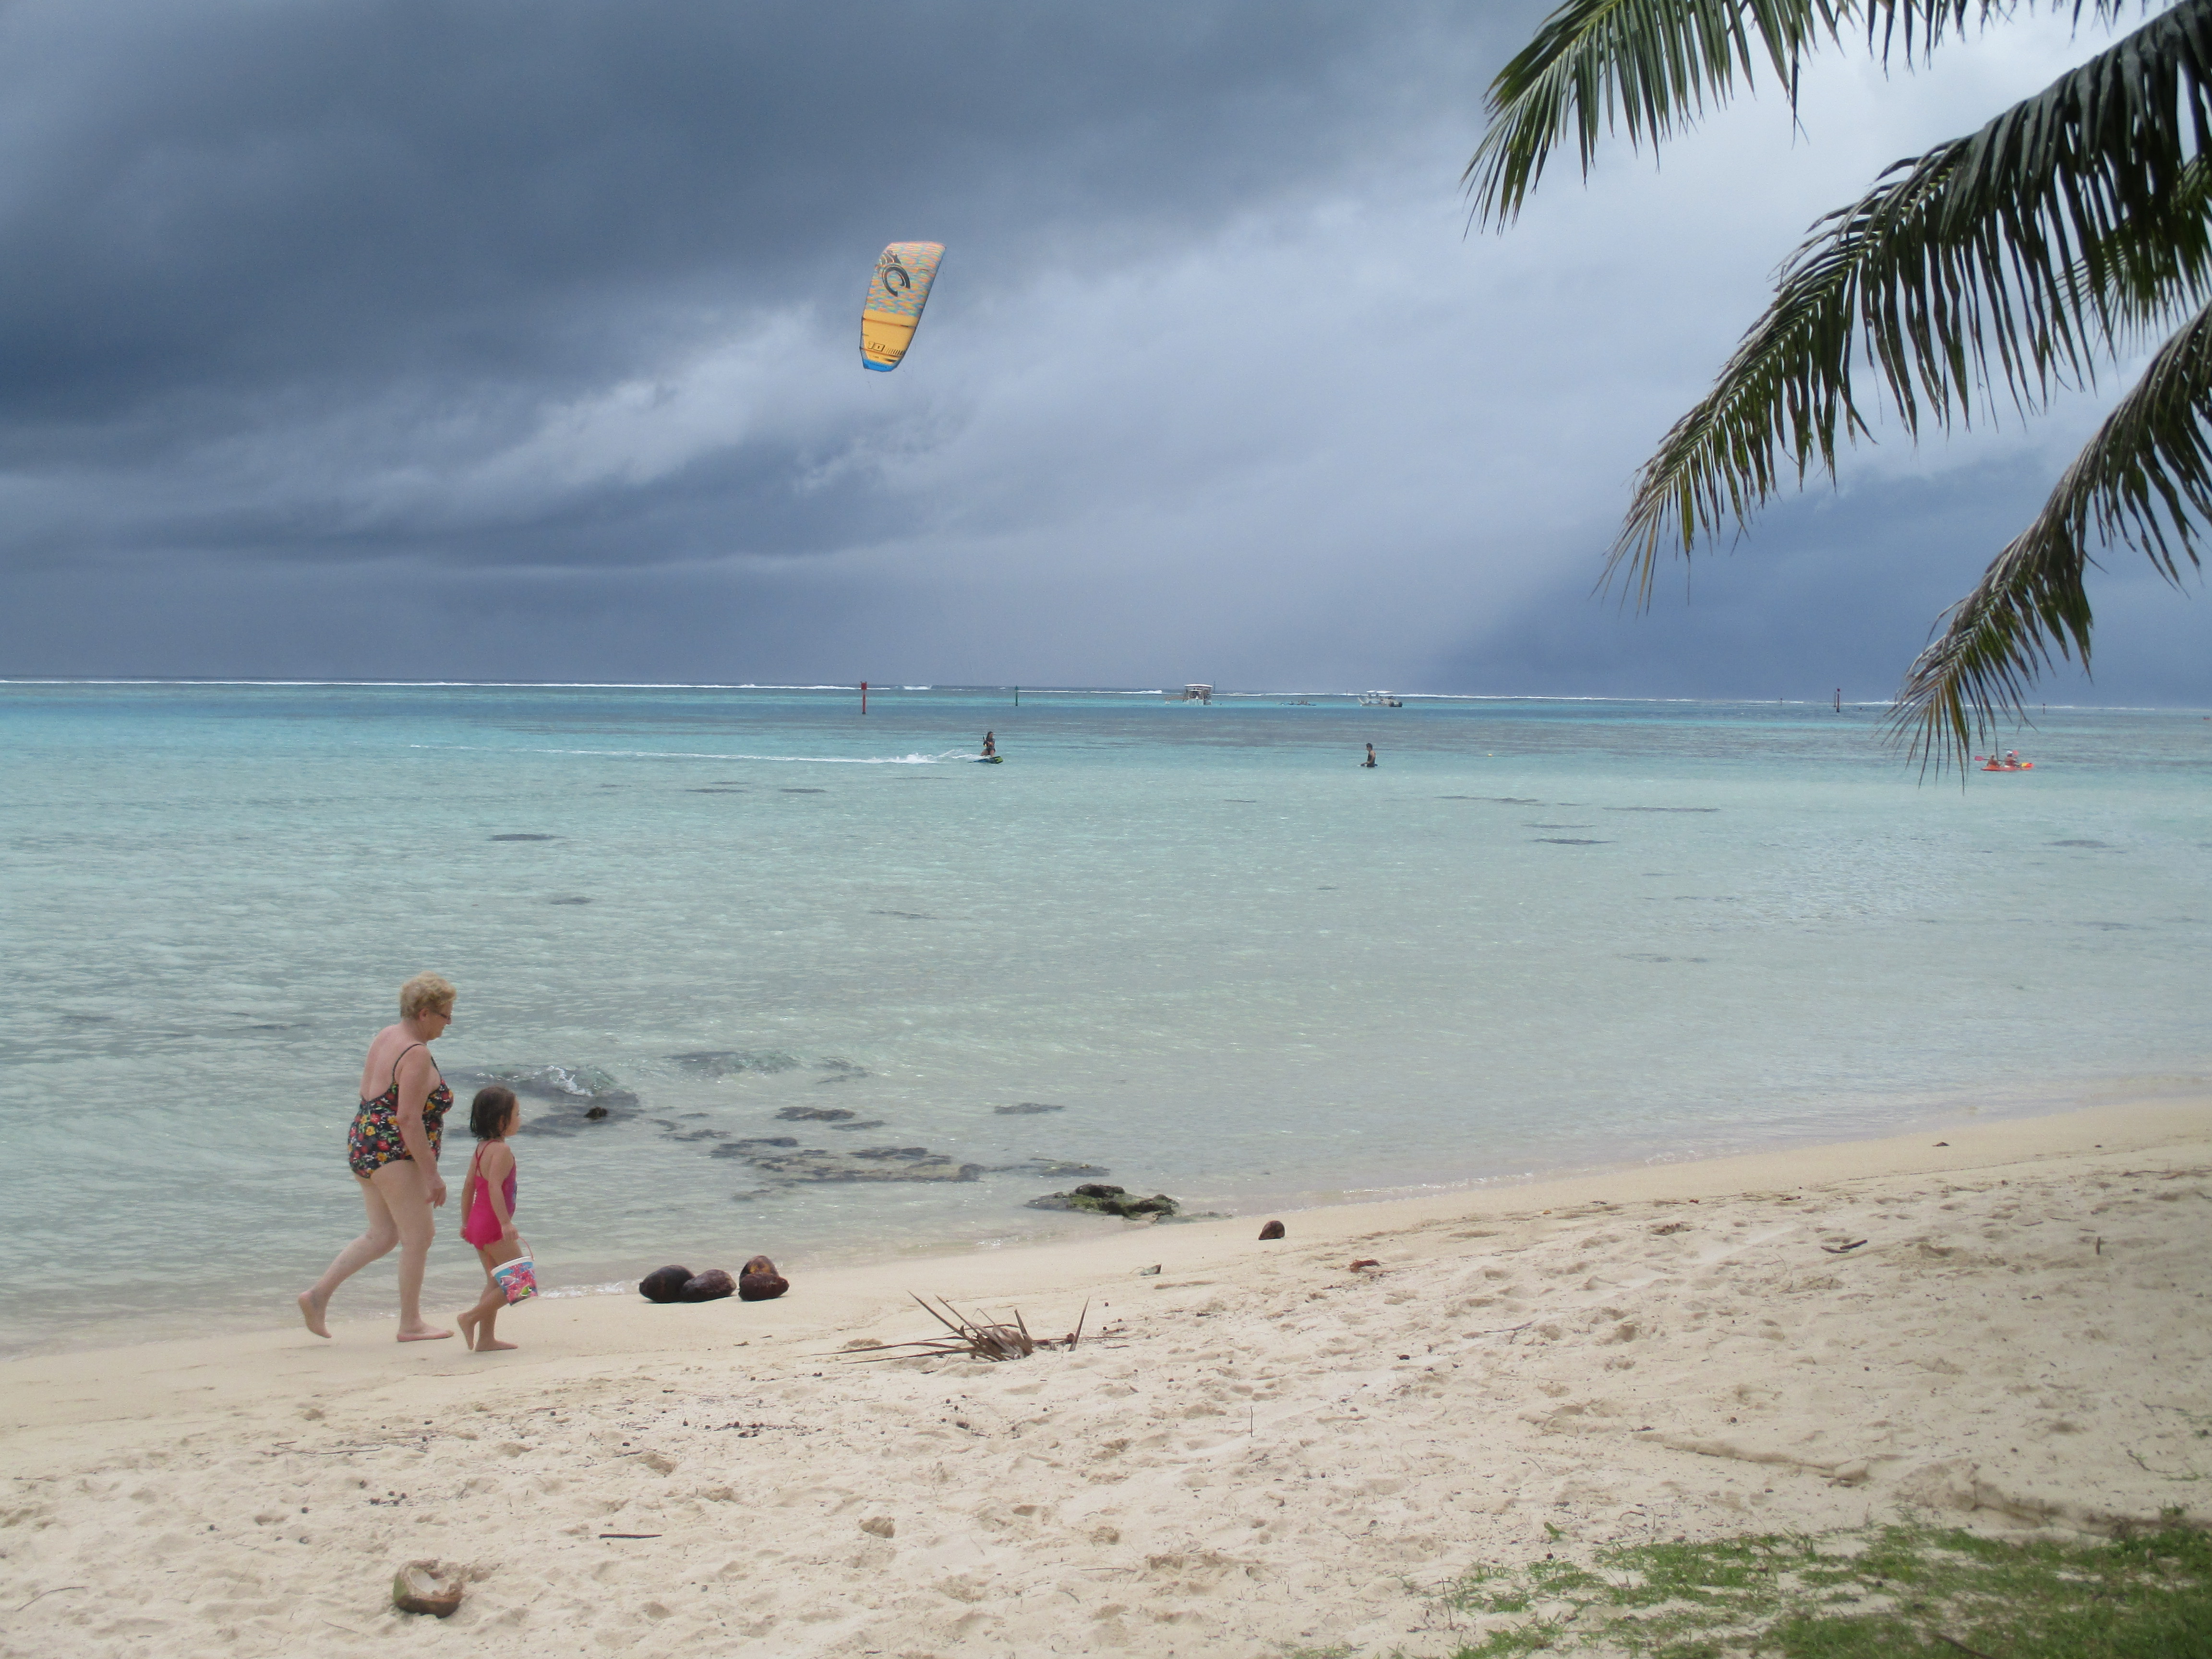 L'arrêté pris en 2015 interdisait la pratique du kitesurf au départ des plages de Tiahura, Temae et Taiamanu à Moorea jusqu’au 31 décembre 2020.